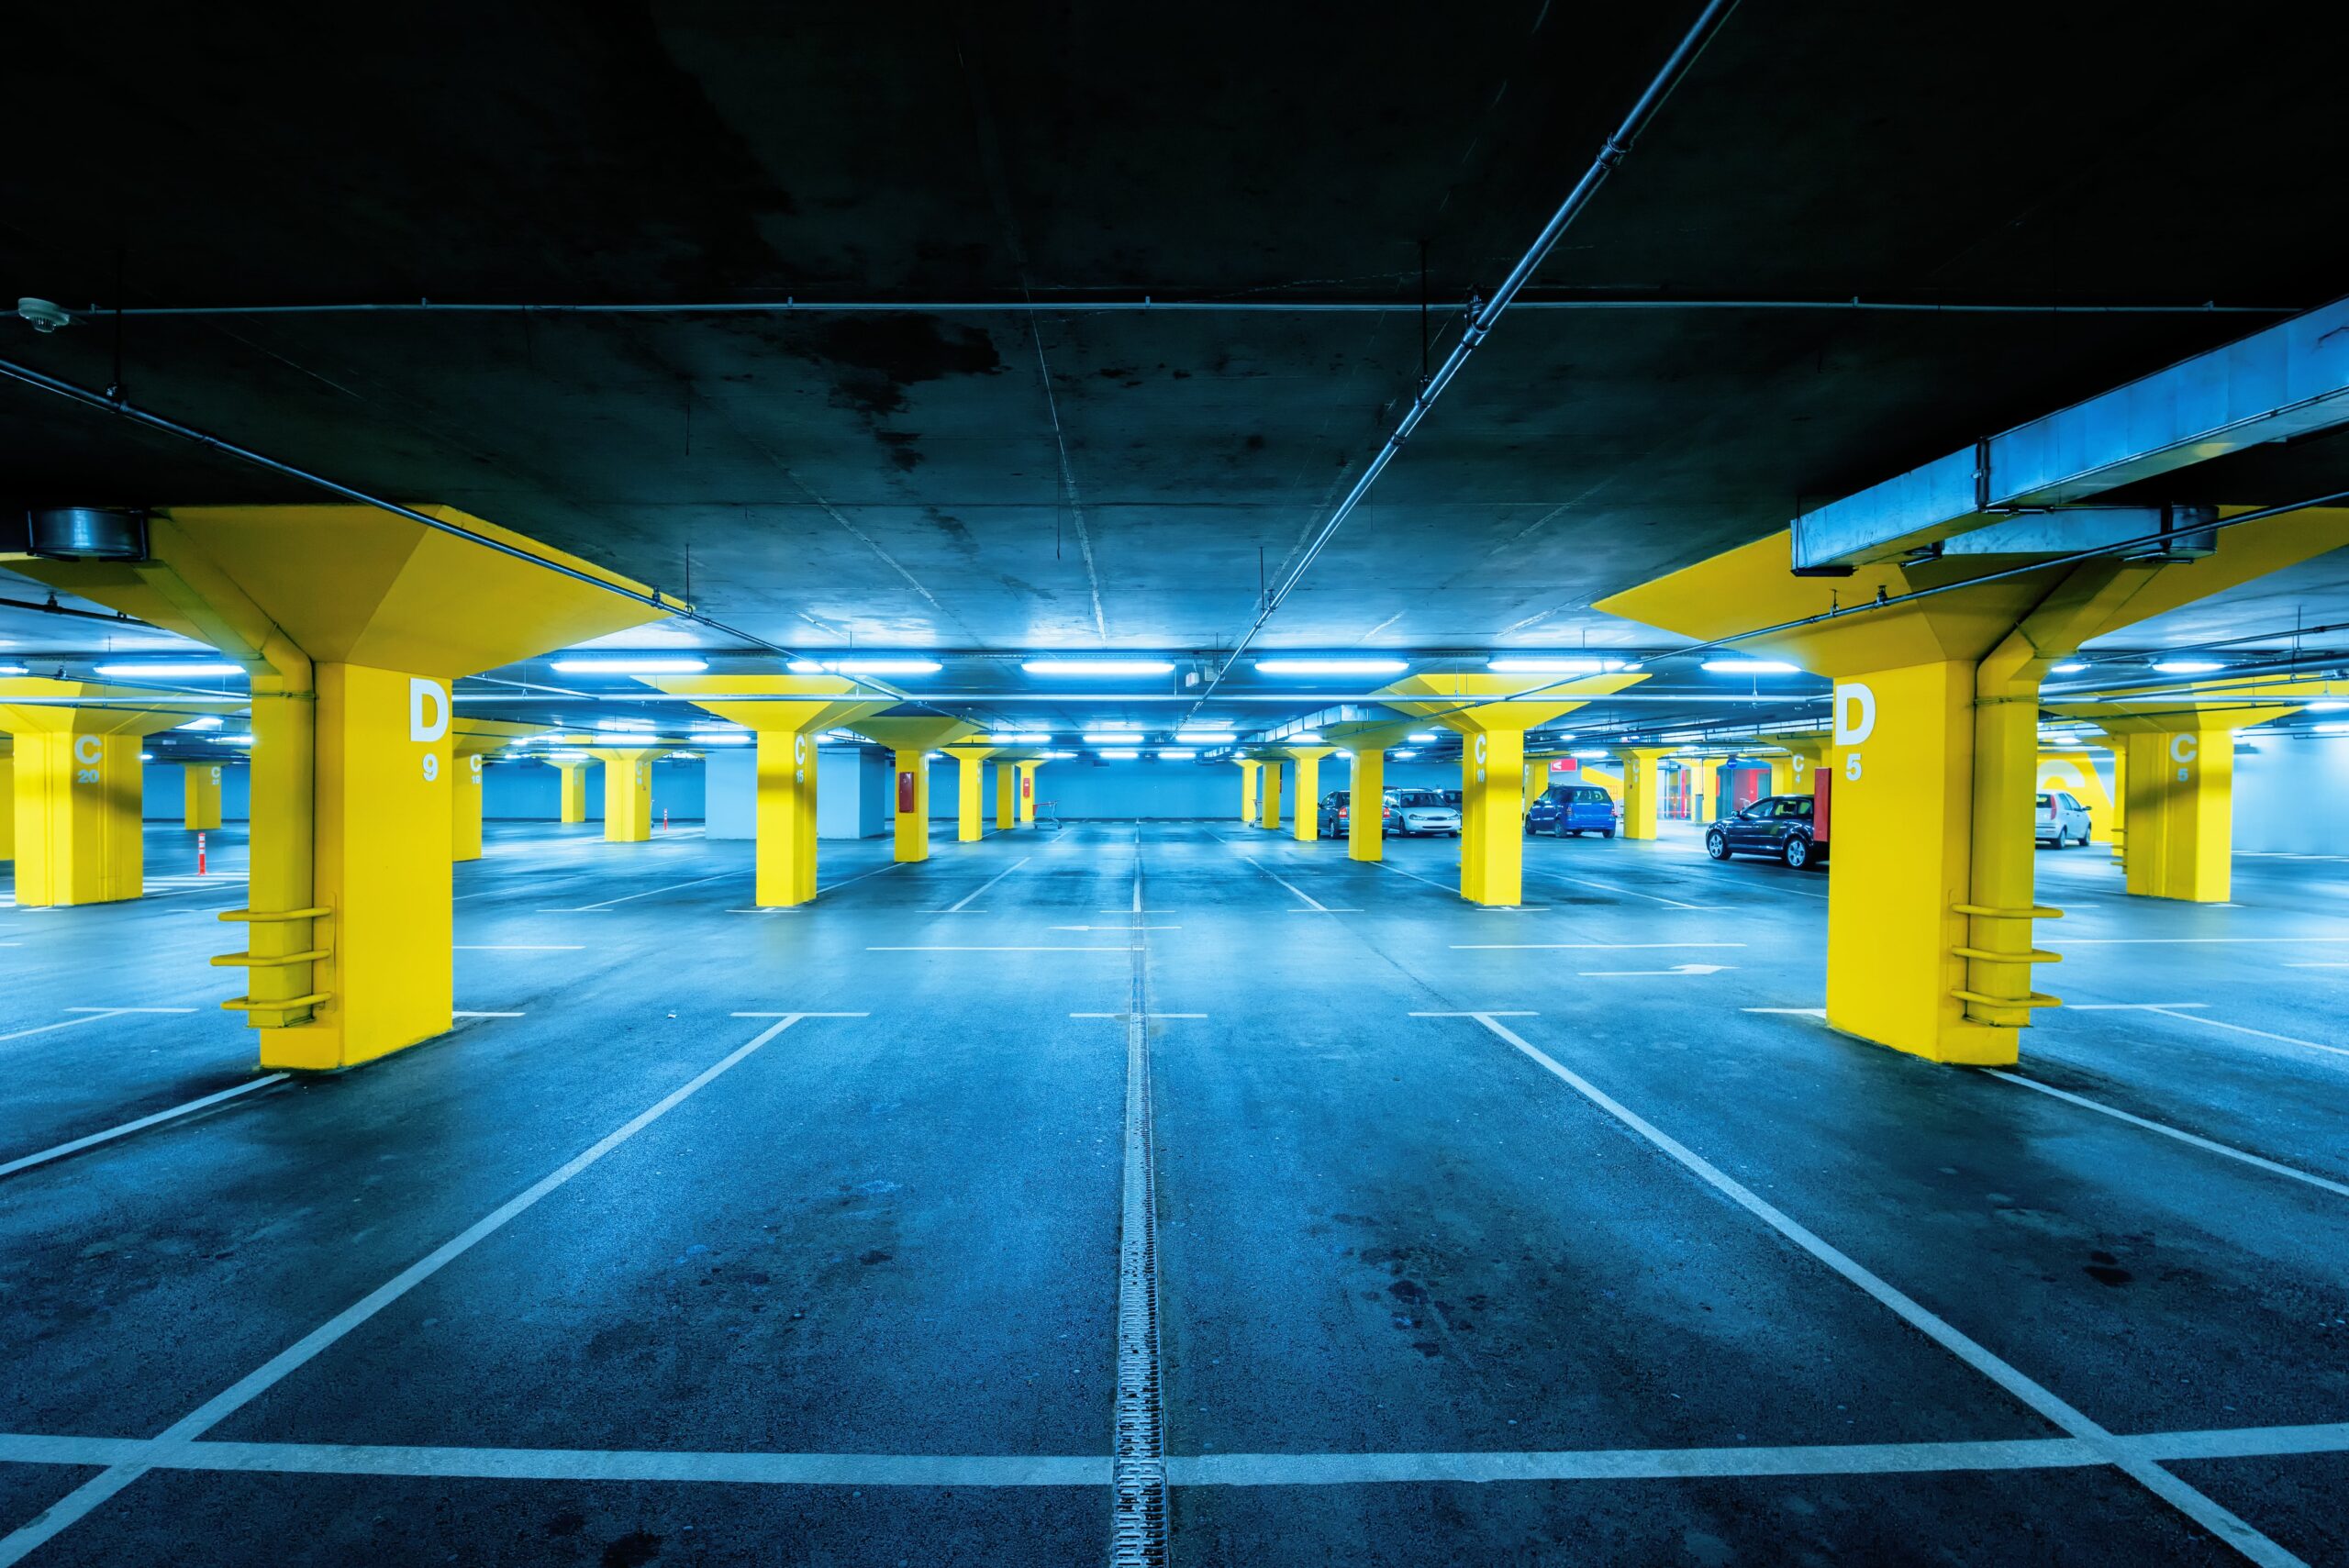 underground parking garage